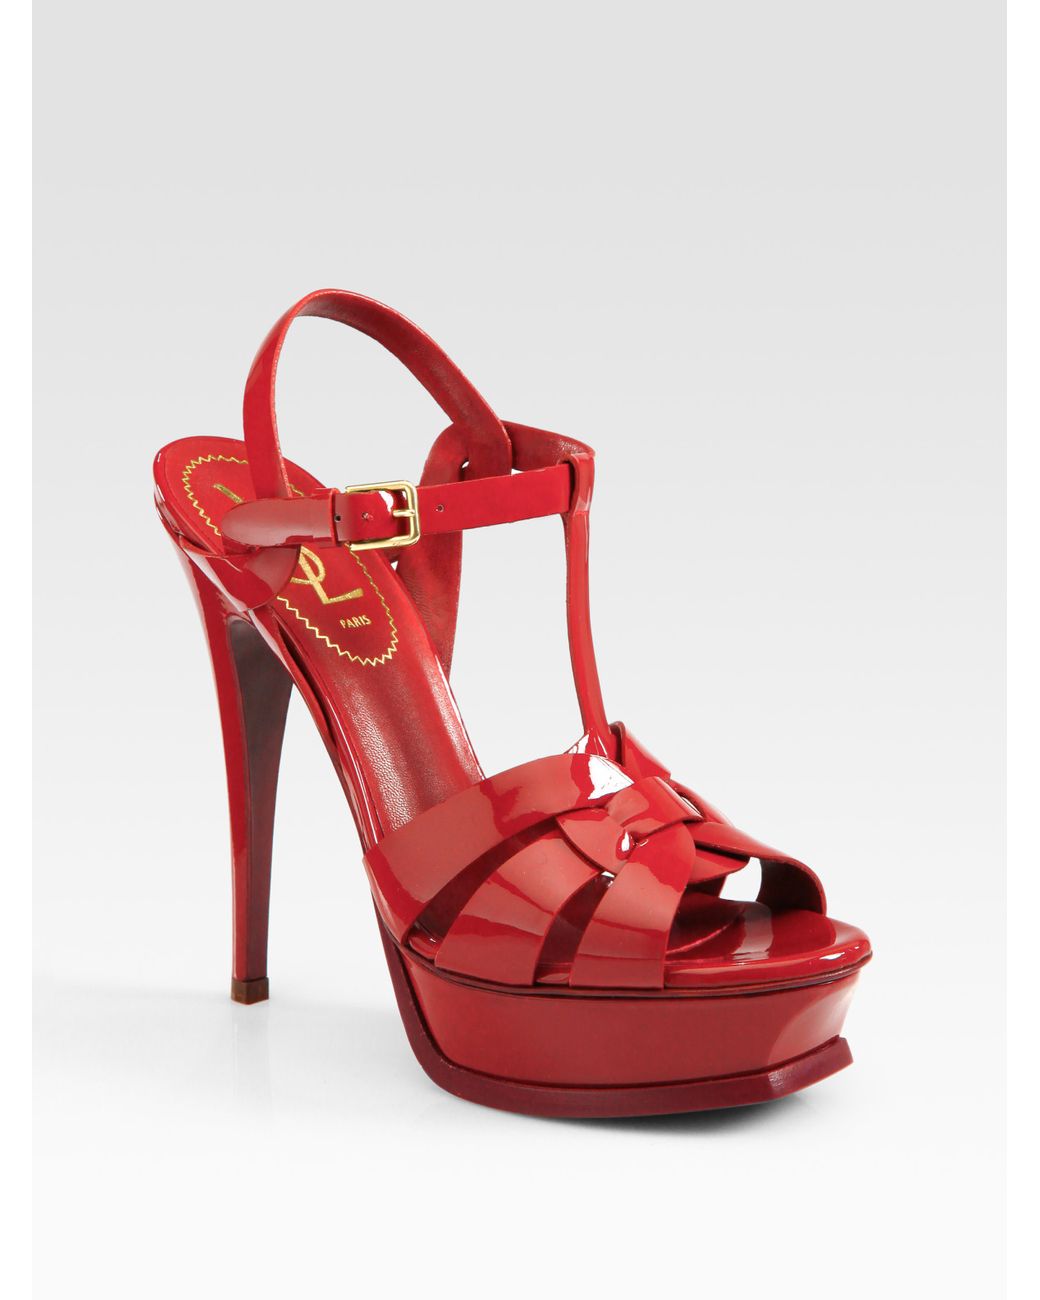 Saint Laurent Ysl Patent Leather Platform Sandals Red Lyst